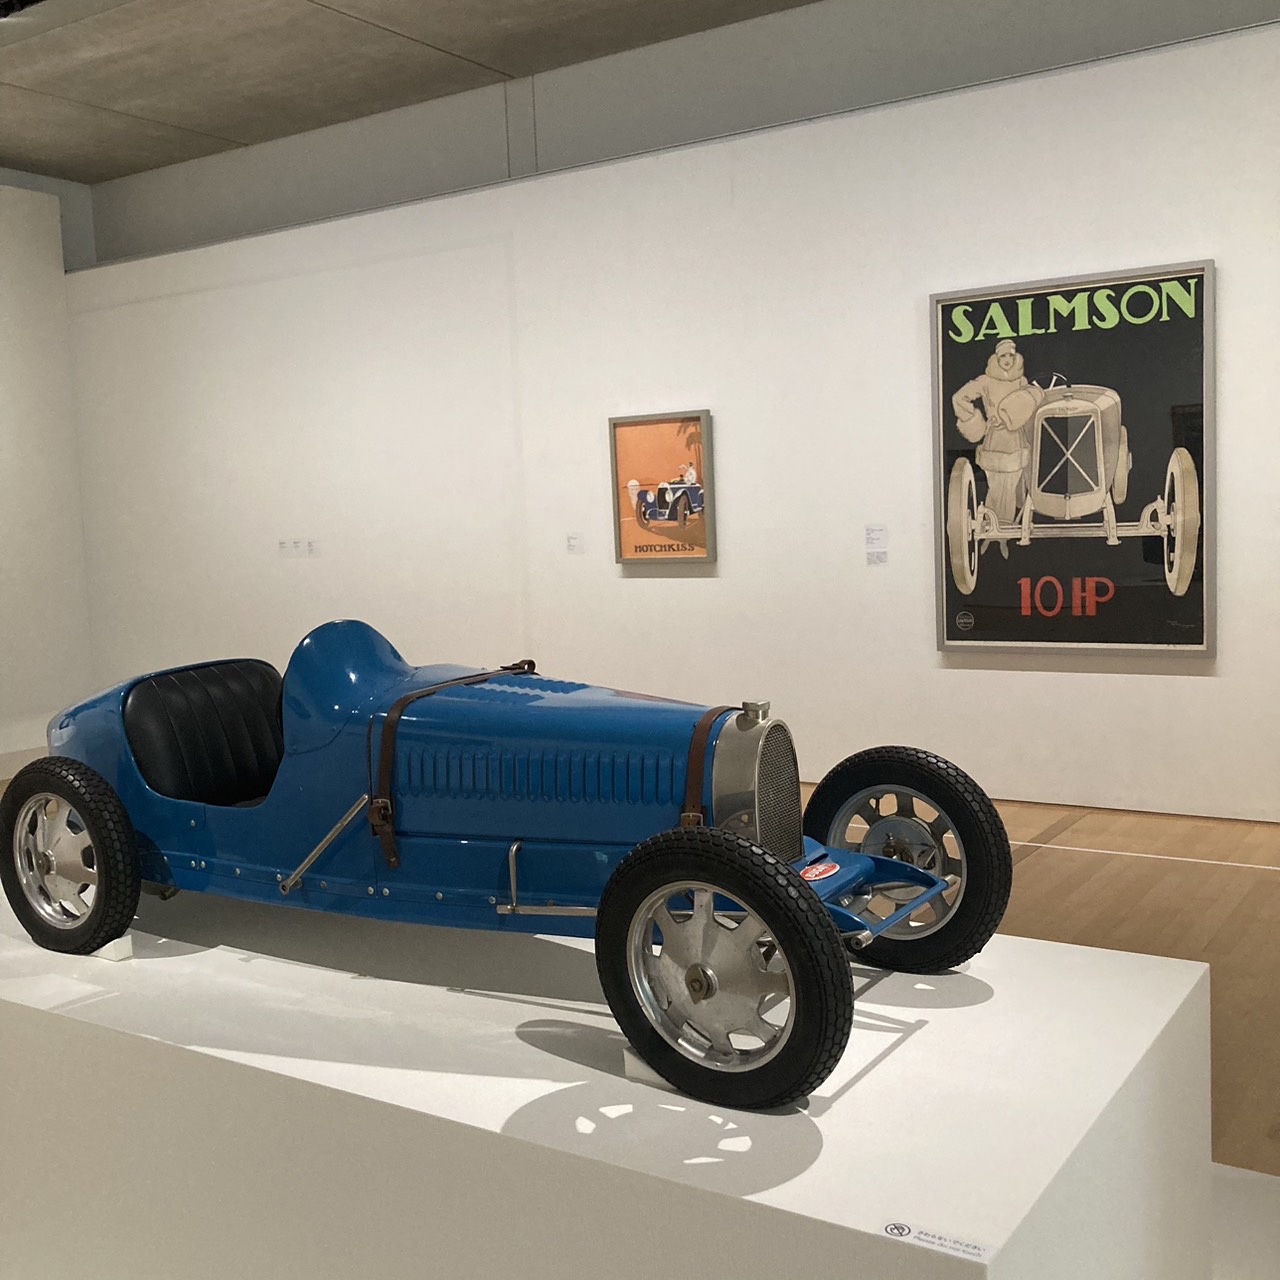 ポーラ美術館 「モダン・タイムス・イン・パリ 1925−機械時代のアートとデザイン」